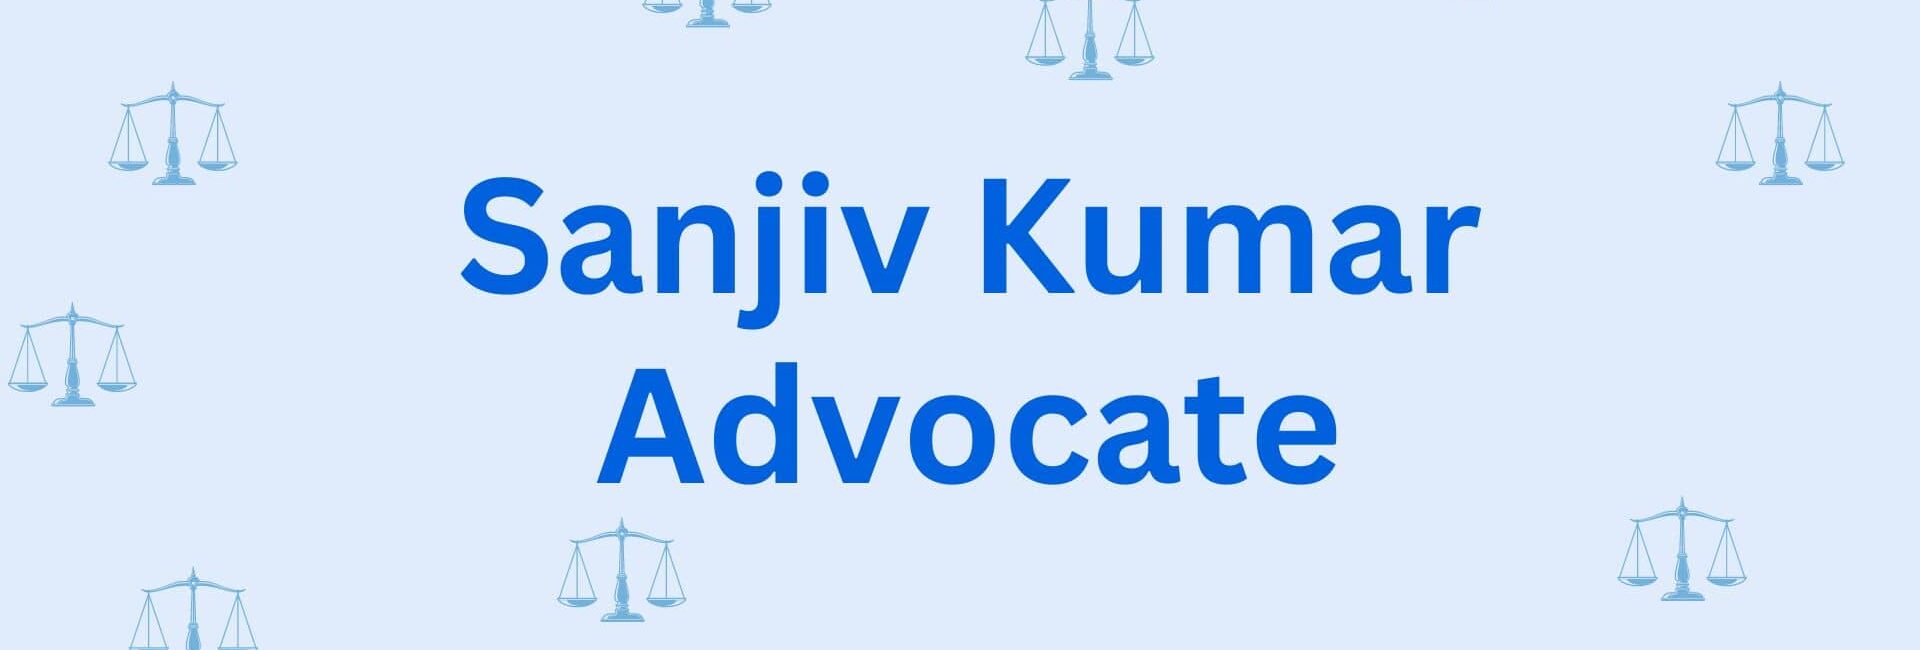 Sanjiv Kumar Advocate - Legal Service Provider in Hisar